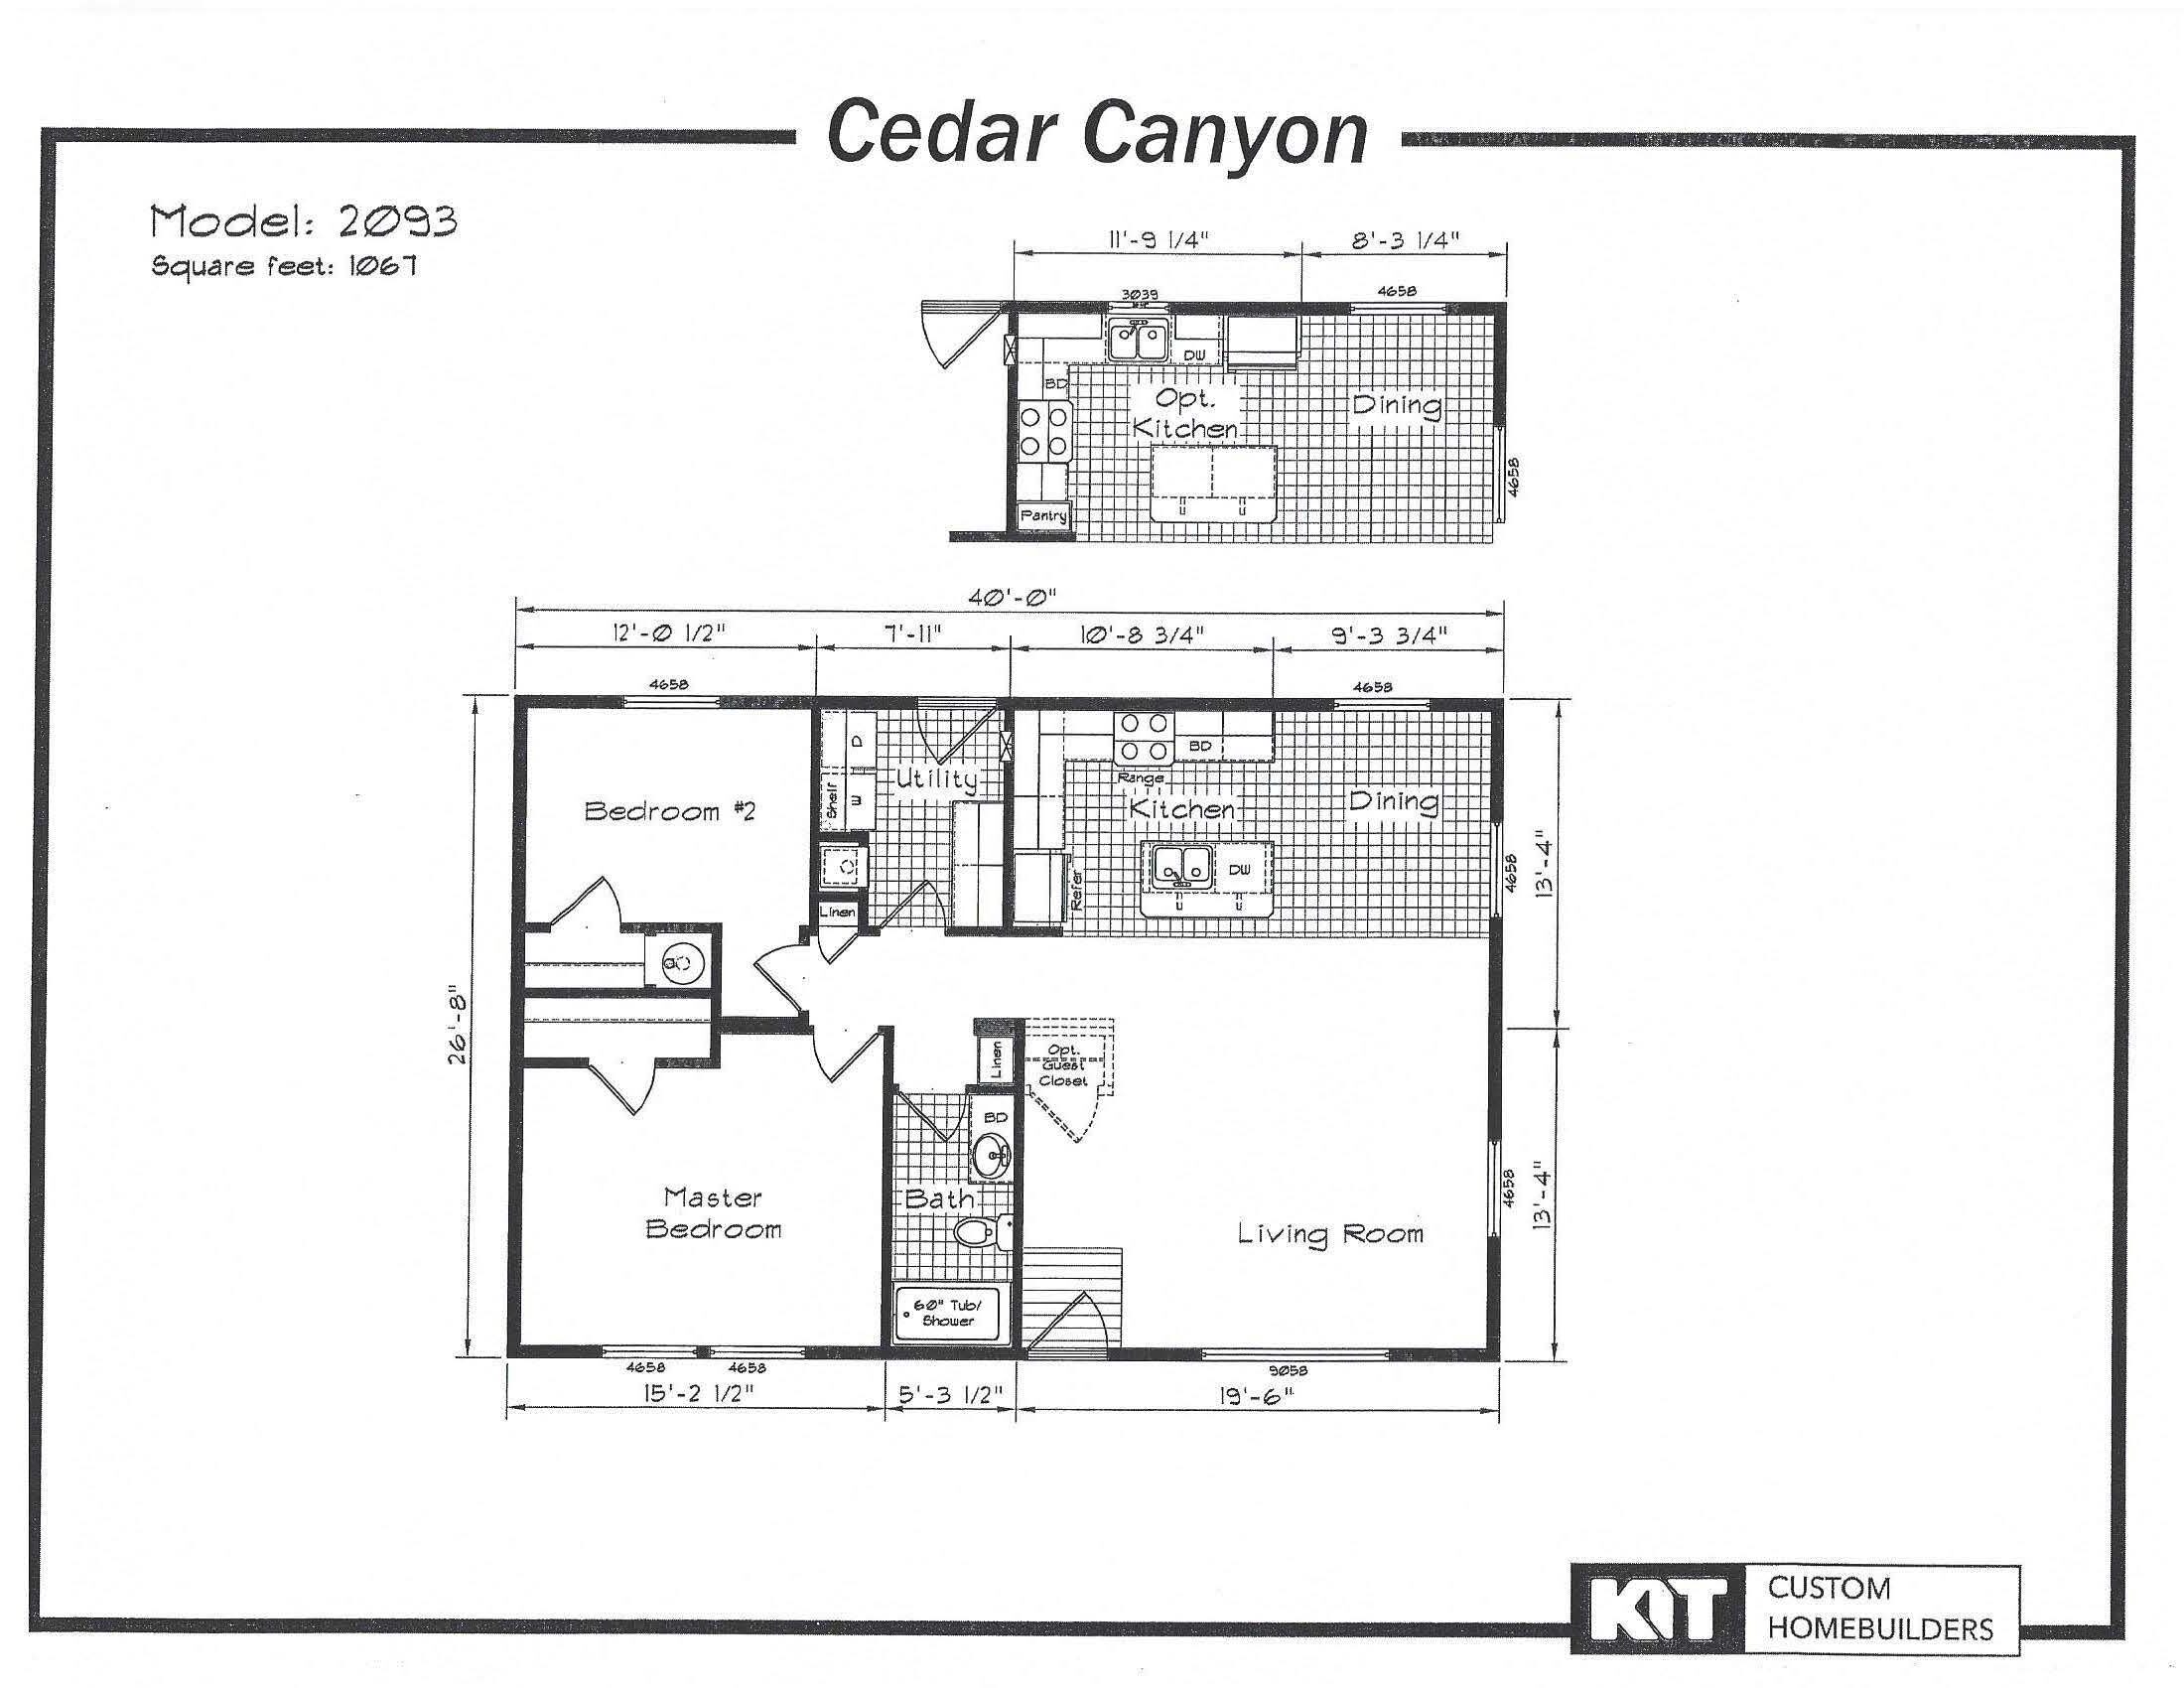 Cedar Canyon floor plan